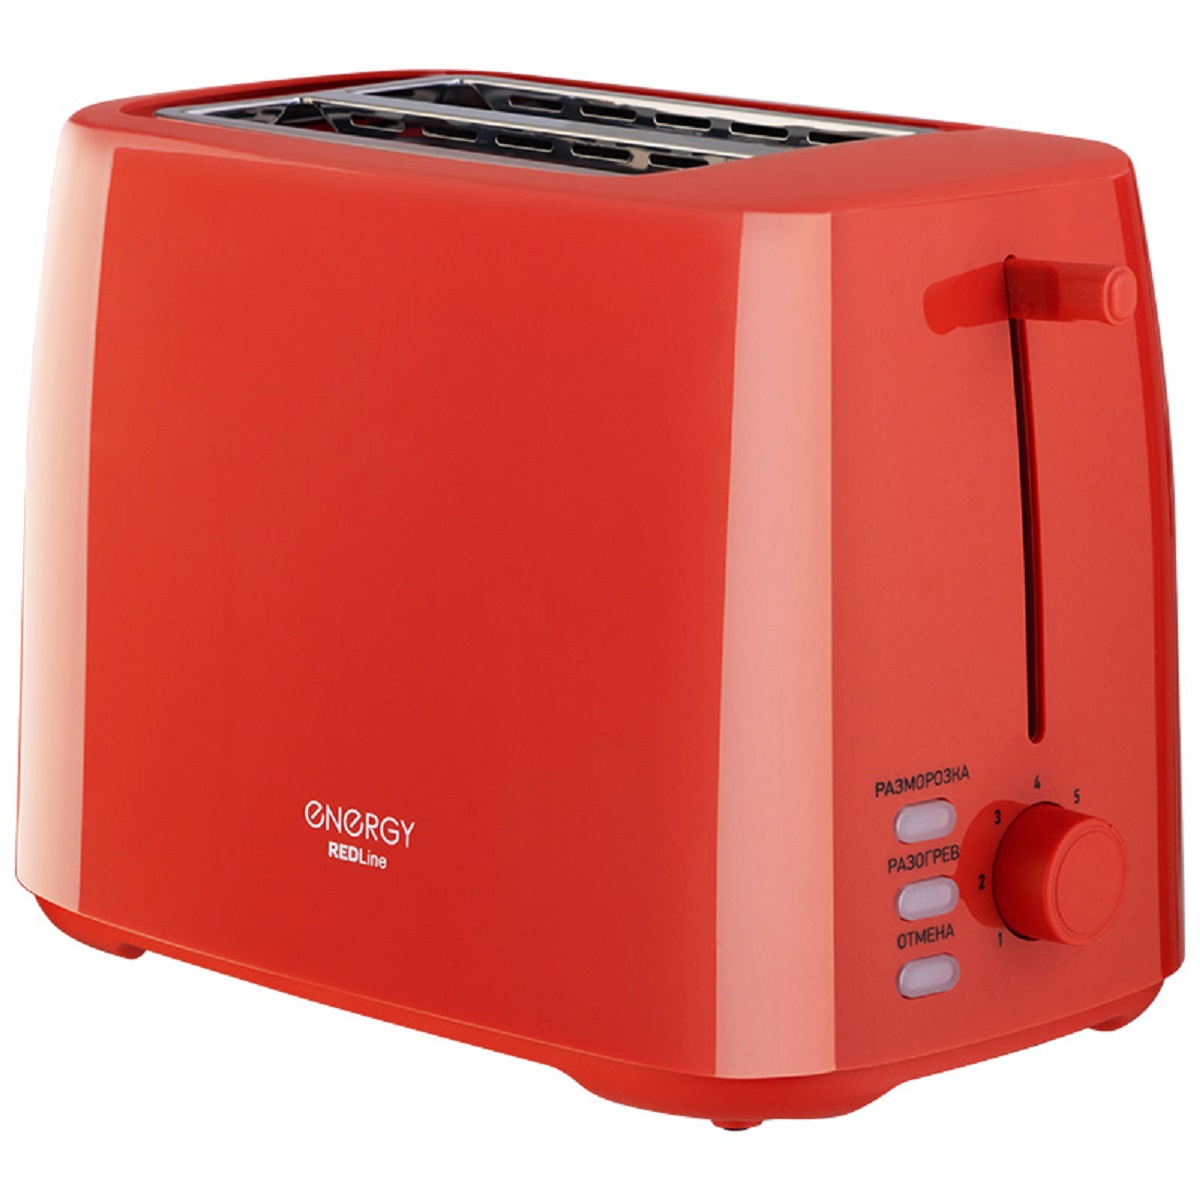 Тостер Energy EN-260 красный тостер homestar hs 1015 красный